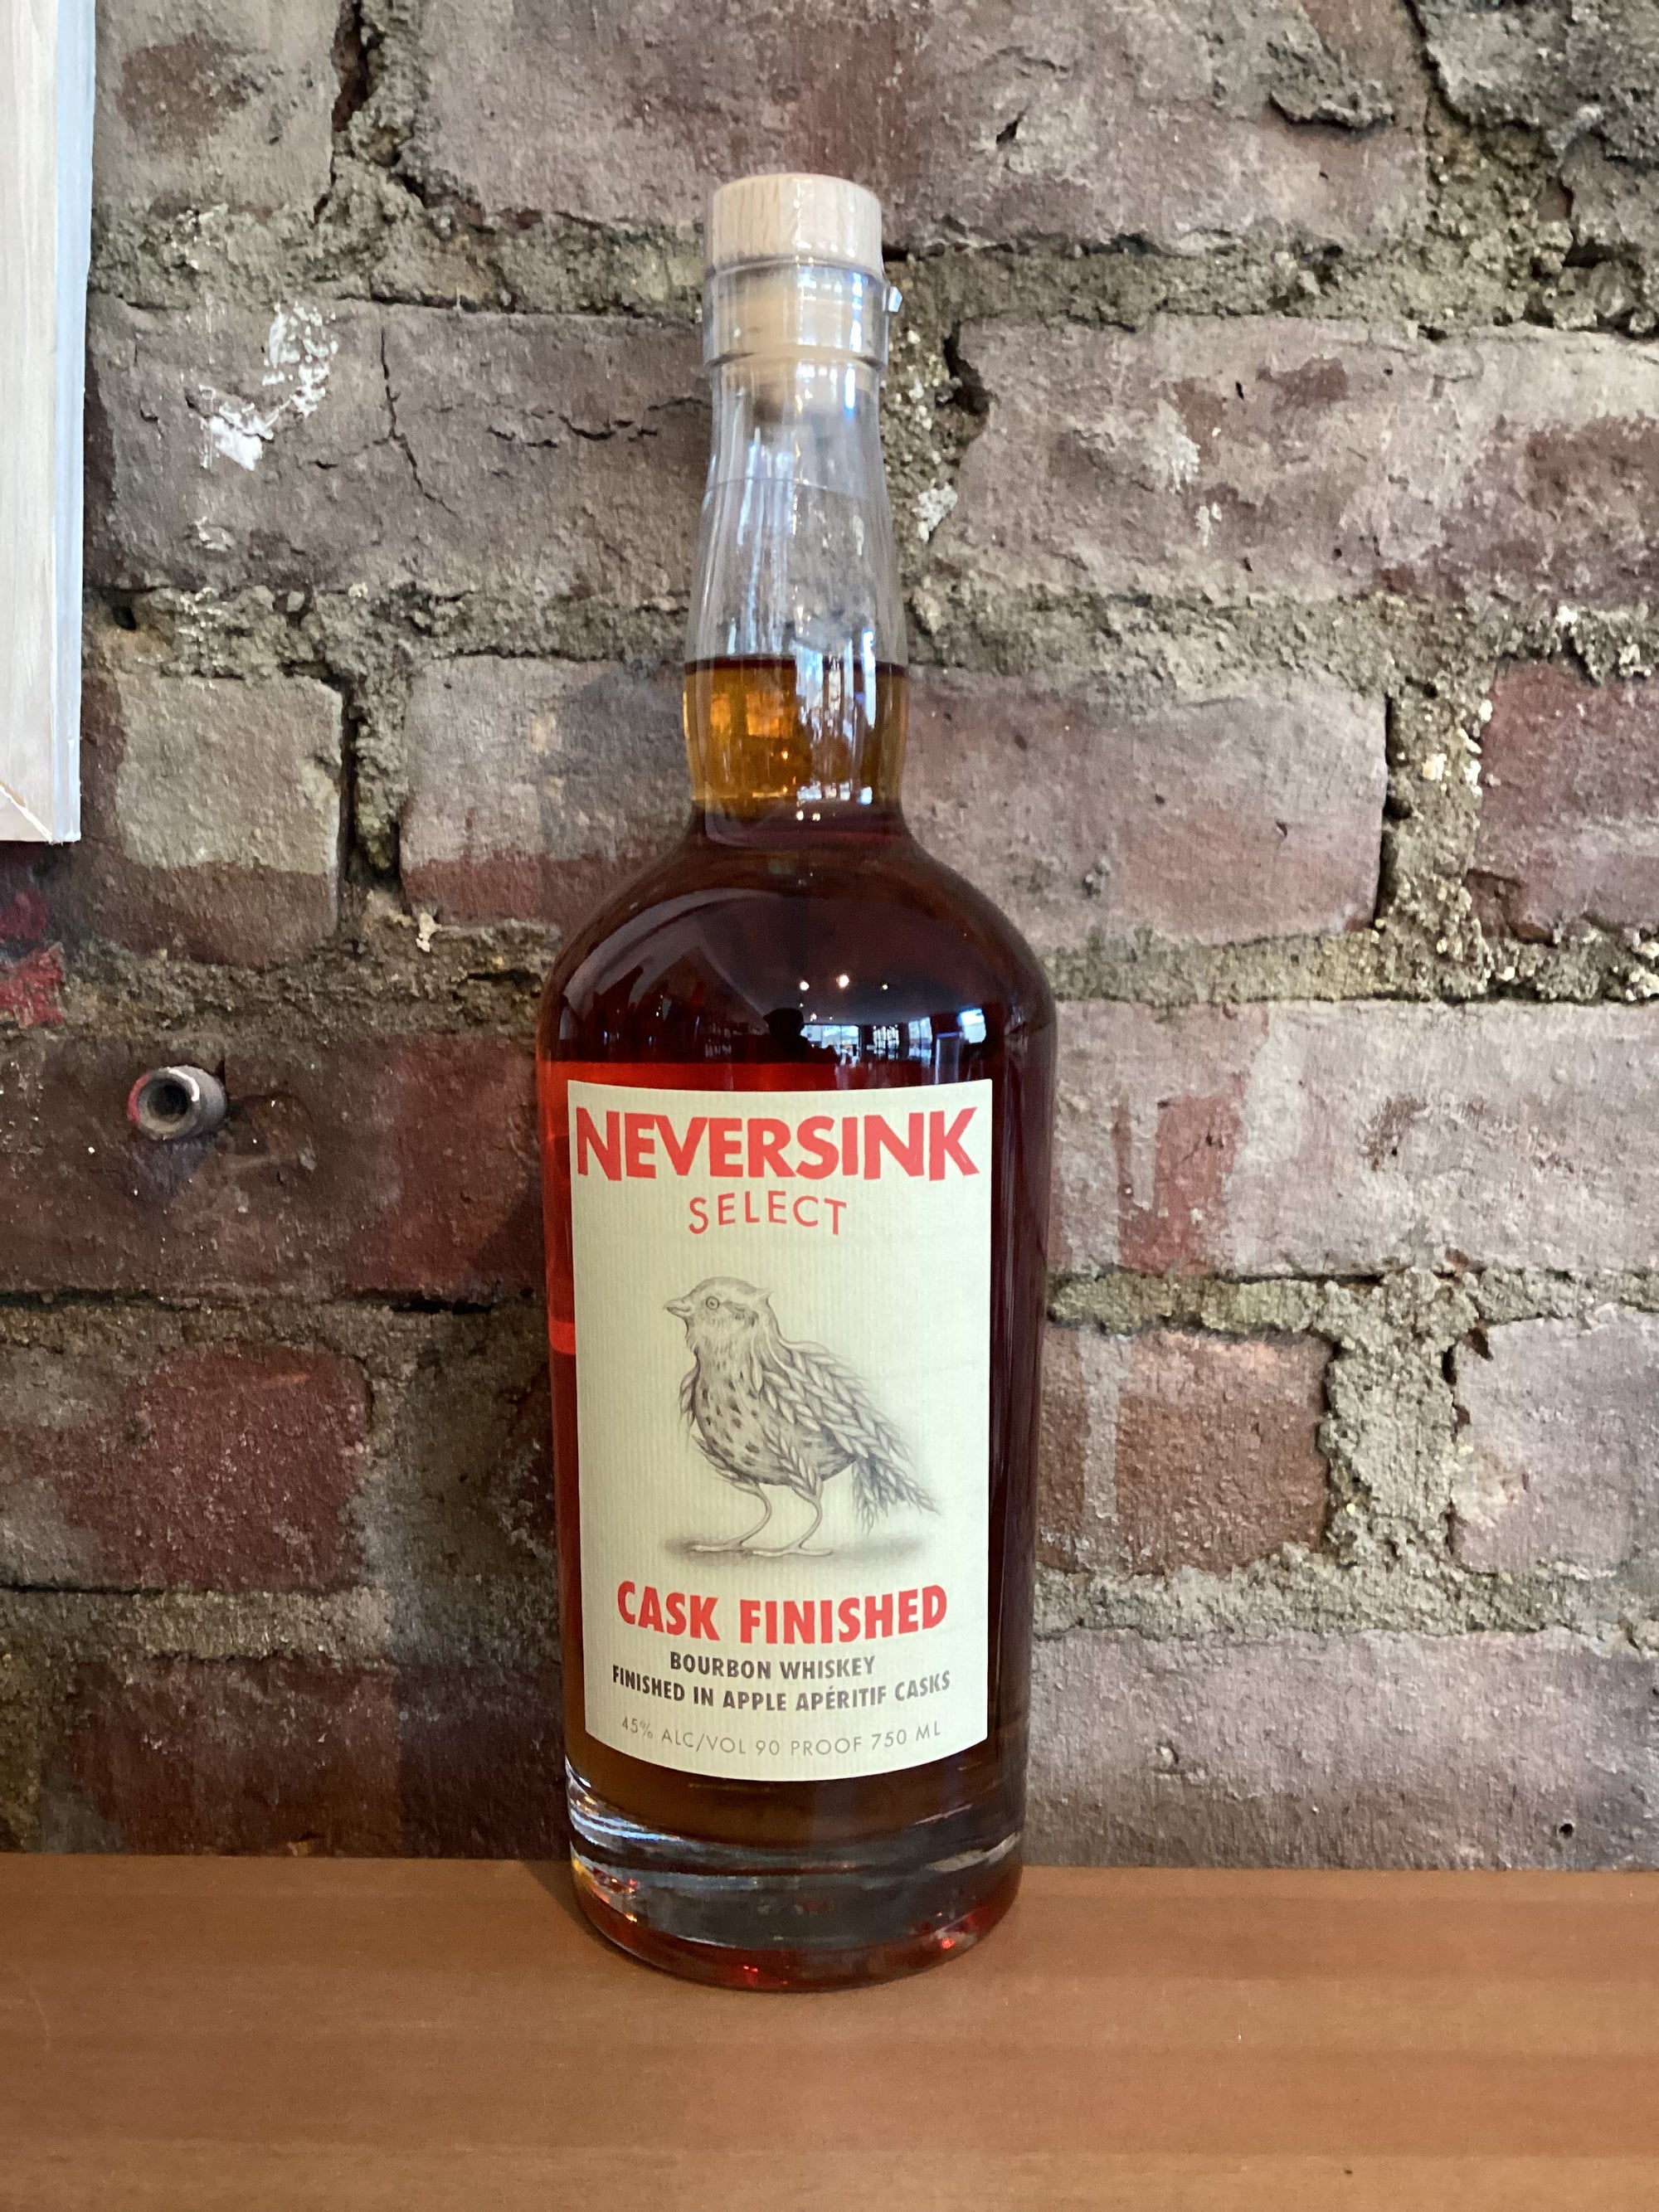 Neversink Spirits, Select Cask Finished Bourbon Whiskey (Port Chester, New York) 750ml